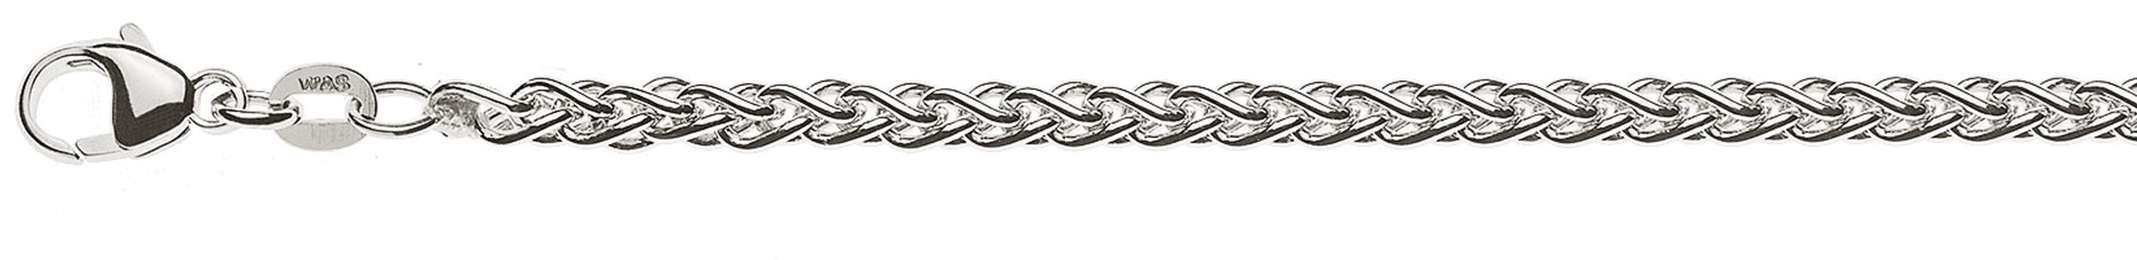 AURONOS Prestige Necklace white gold 18K cable chain 50cm 3.3mm